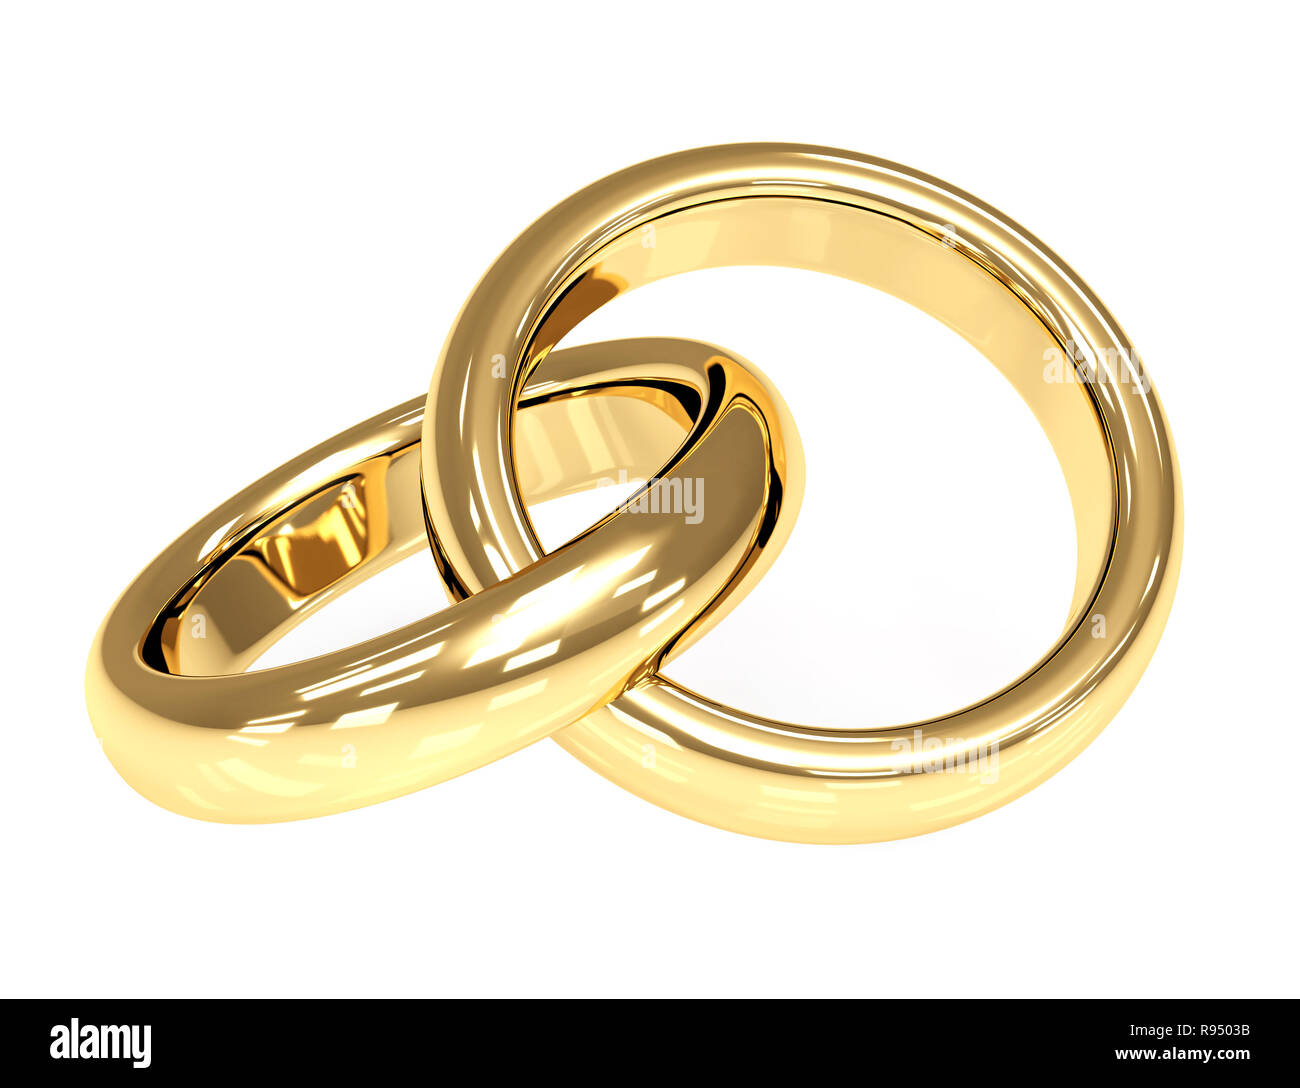 Zwei 3d gold Hochzeit Ringe. Objekte über Weiß Stockfotografie - Alamy